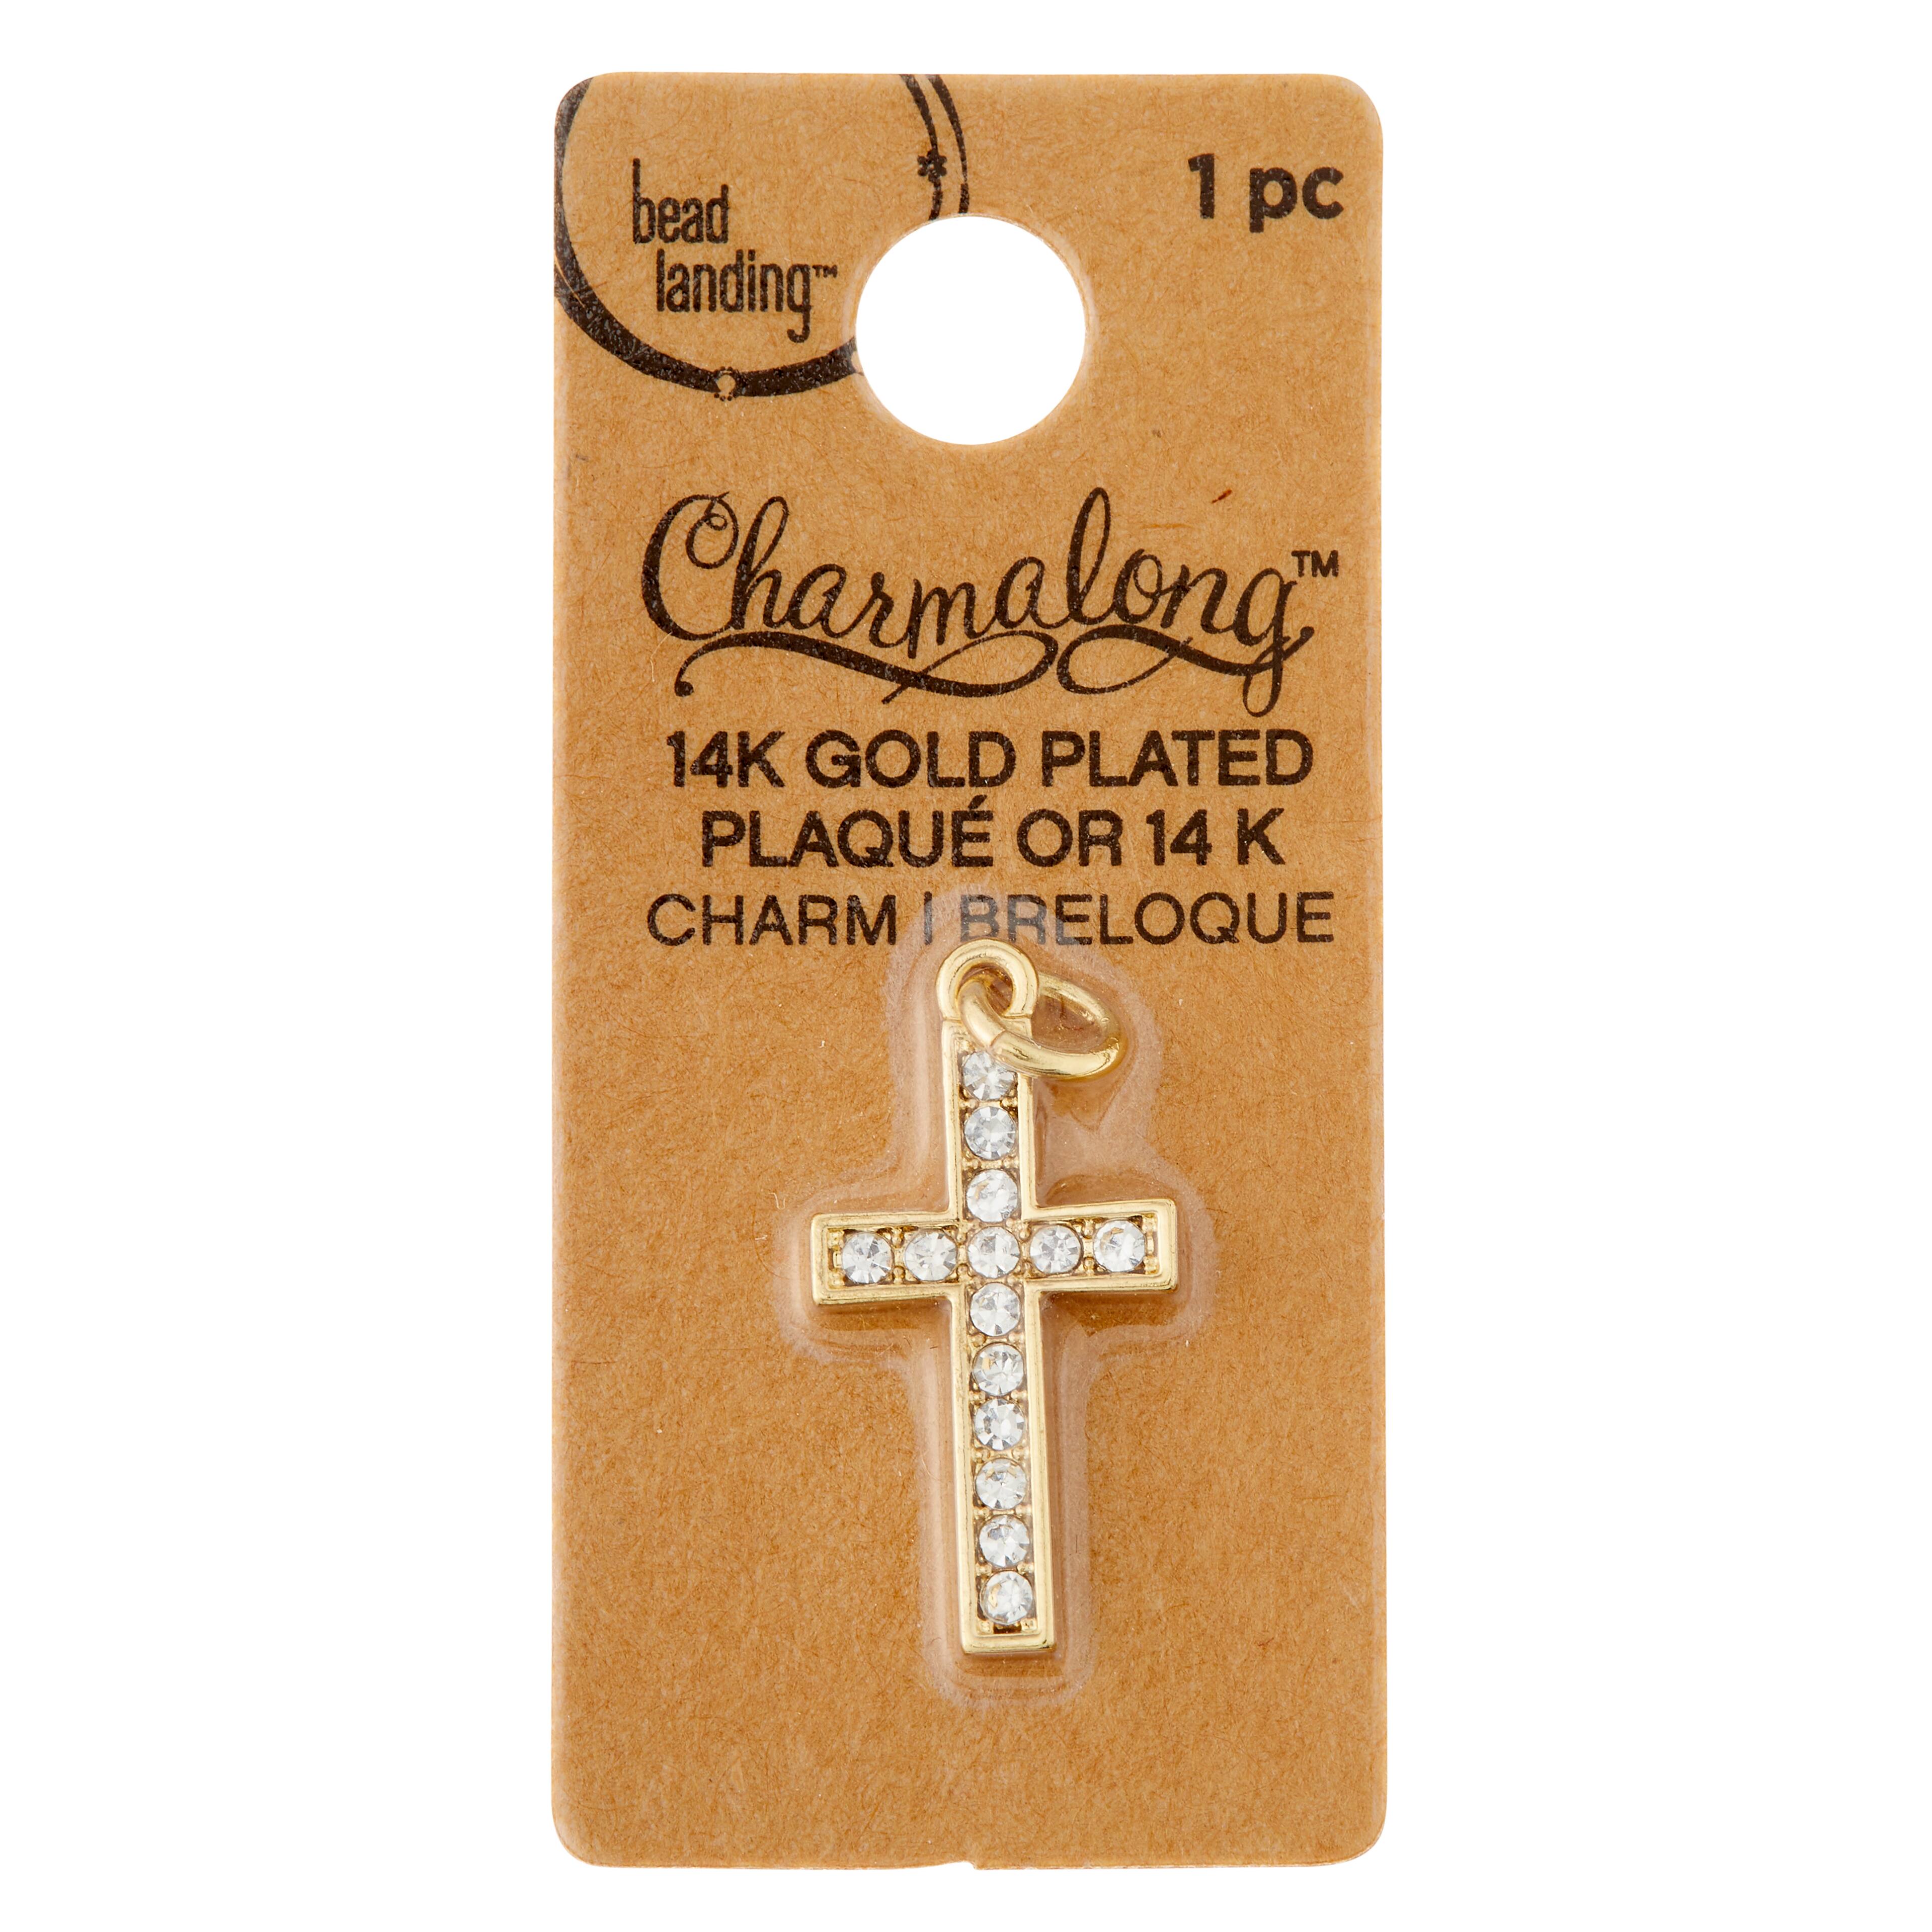 Bead Landing Charmalong Metal Cross Charms - 20 ct